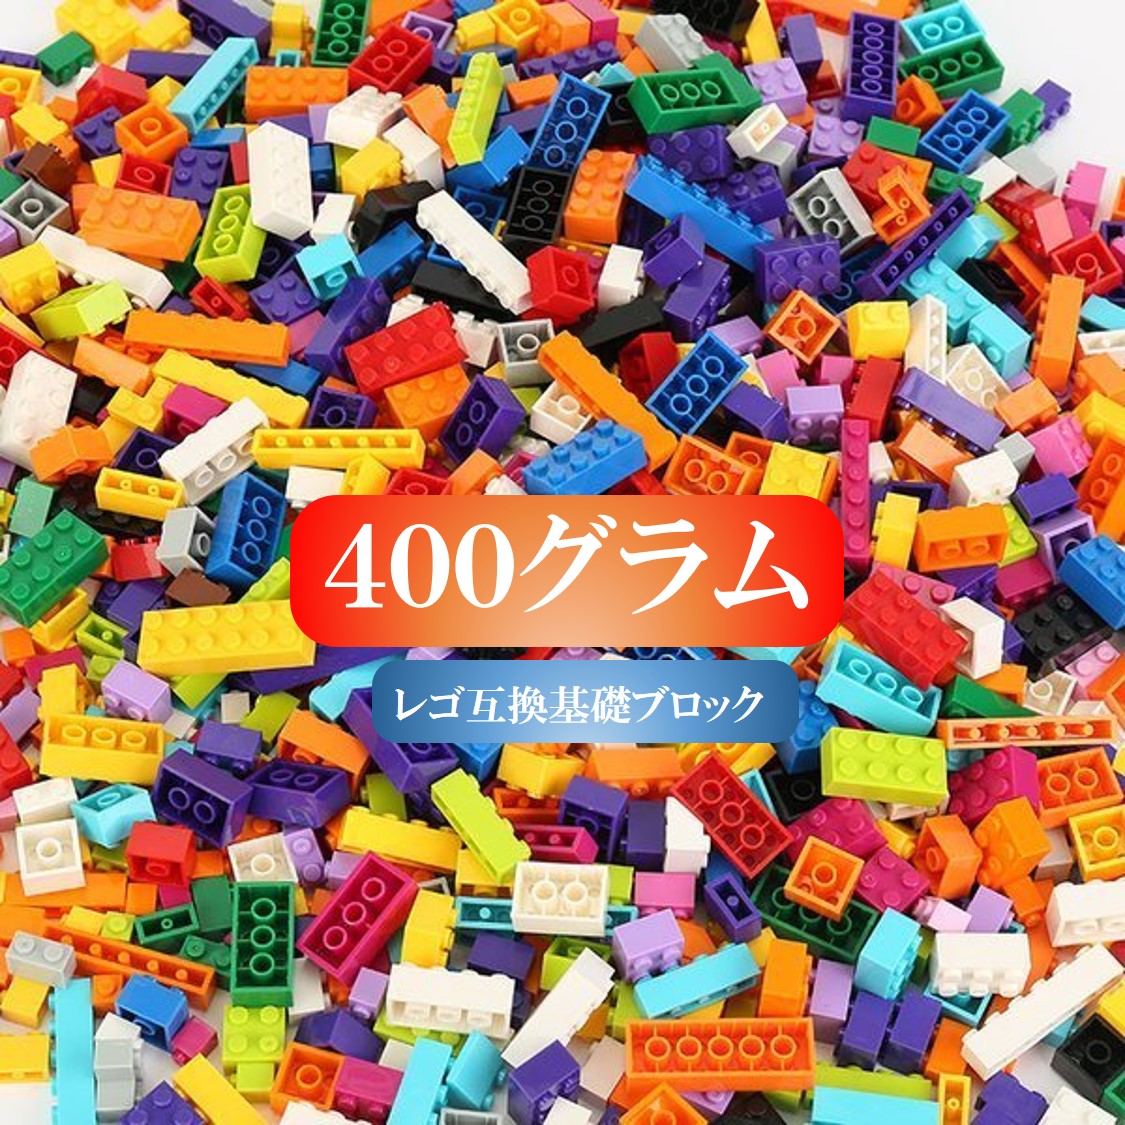 送料無料お手入れ要らず 最も信頼できる 大容量 ブロック 400グラムセット 送料無料 レゴブロック 15種 10色 レゴ互換 LEGO クラシック おもちゃ キッズ 子ども 男の子と女の子 hirama-k.com hirama-k.com